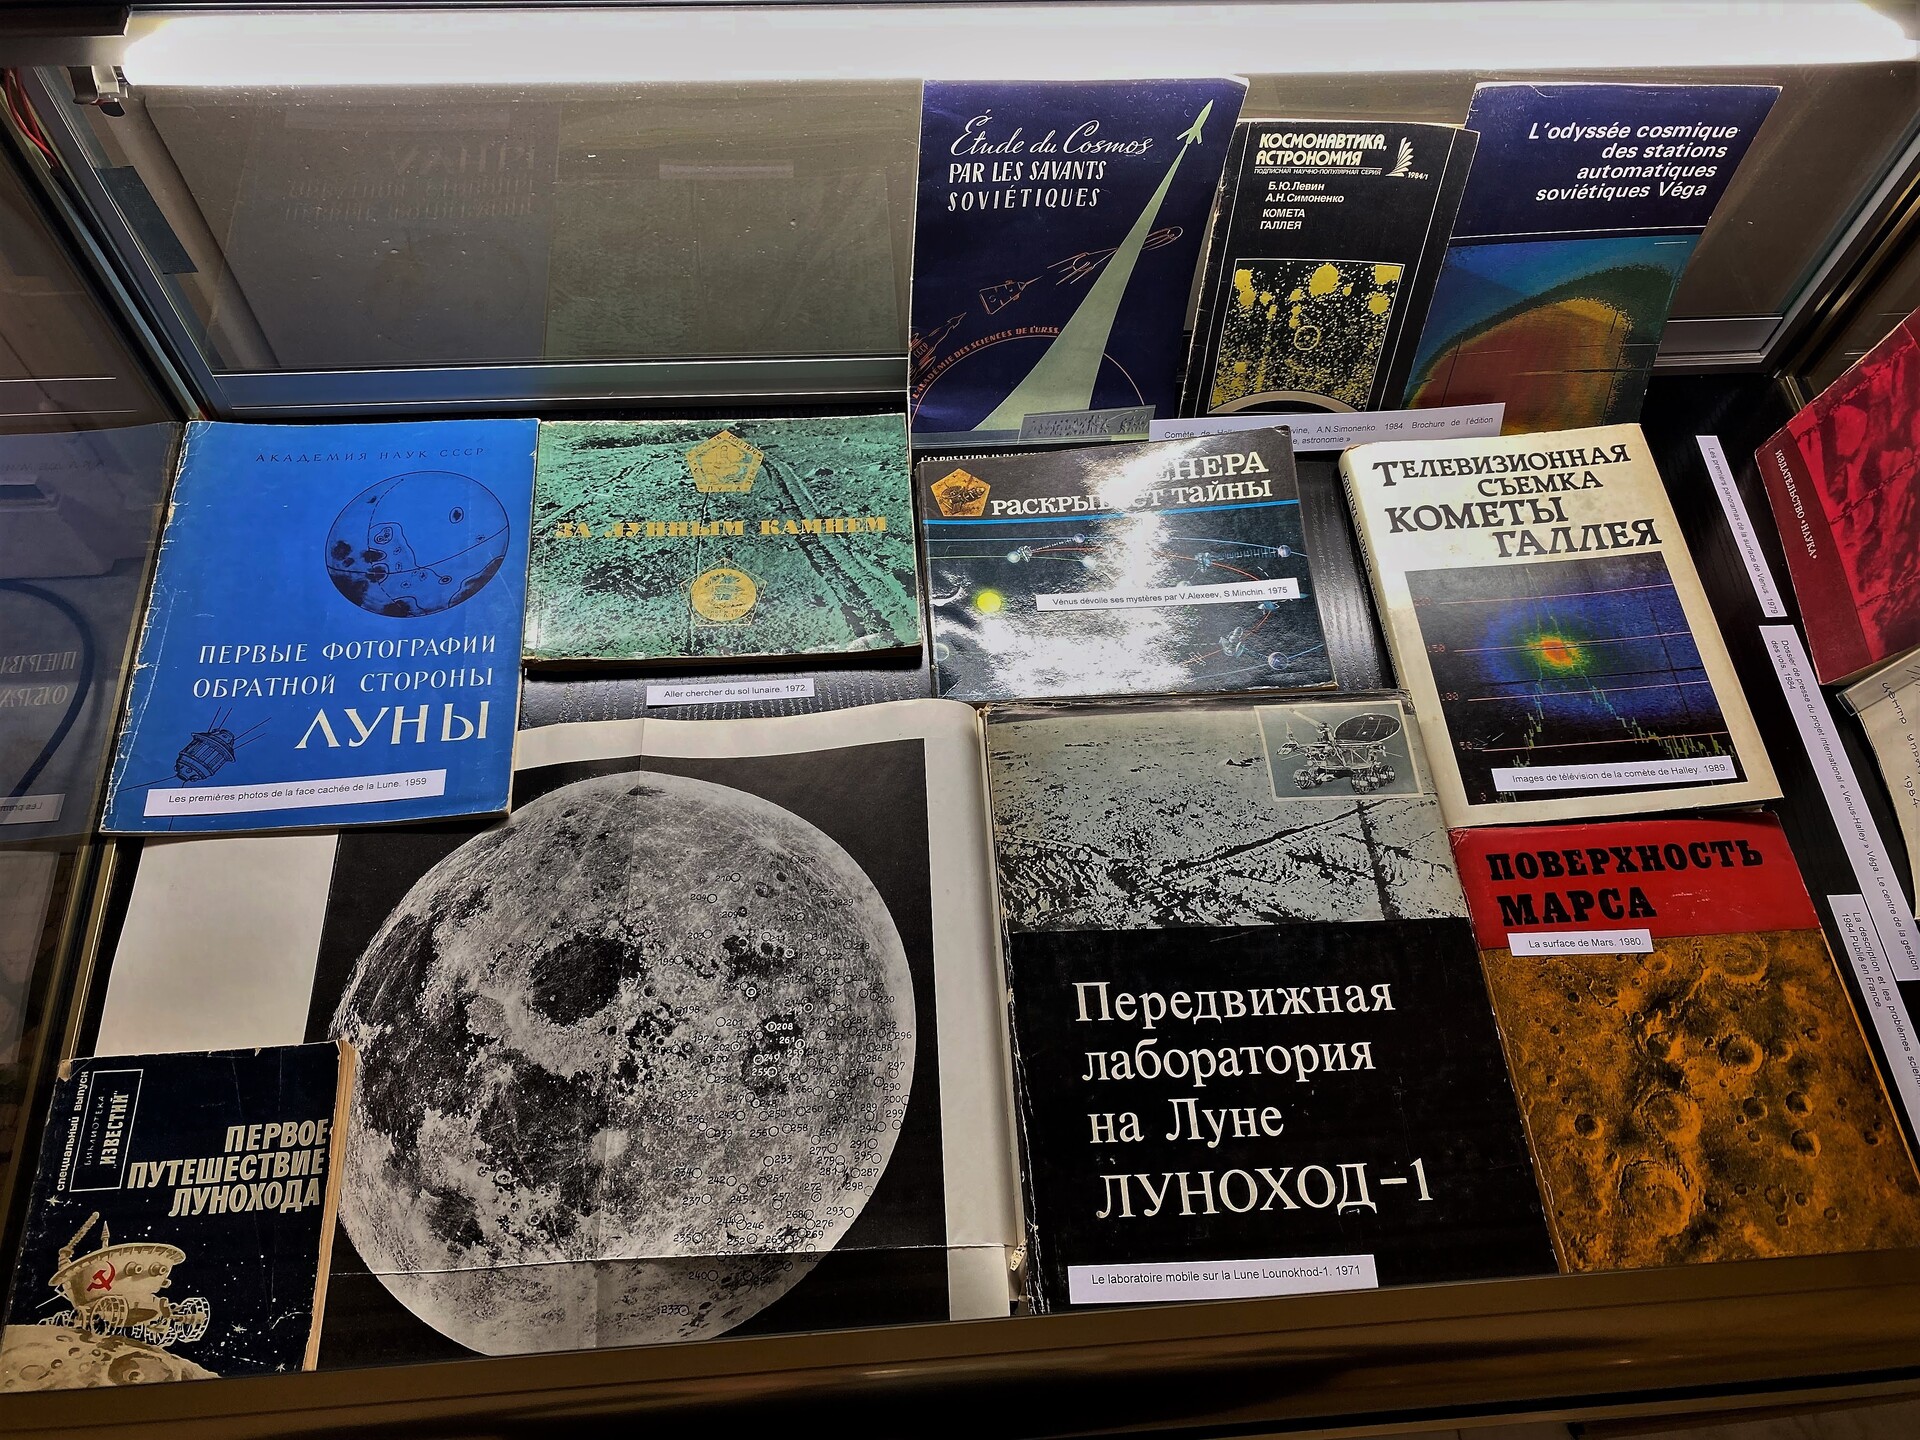 Collection de publications scientifiques soviétiques sur l'espace de Christian Lardier